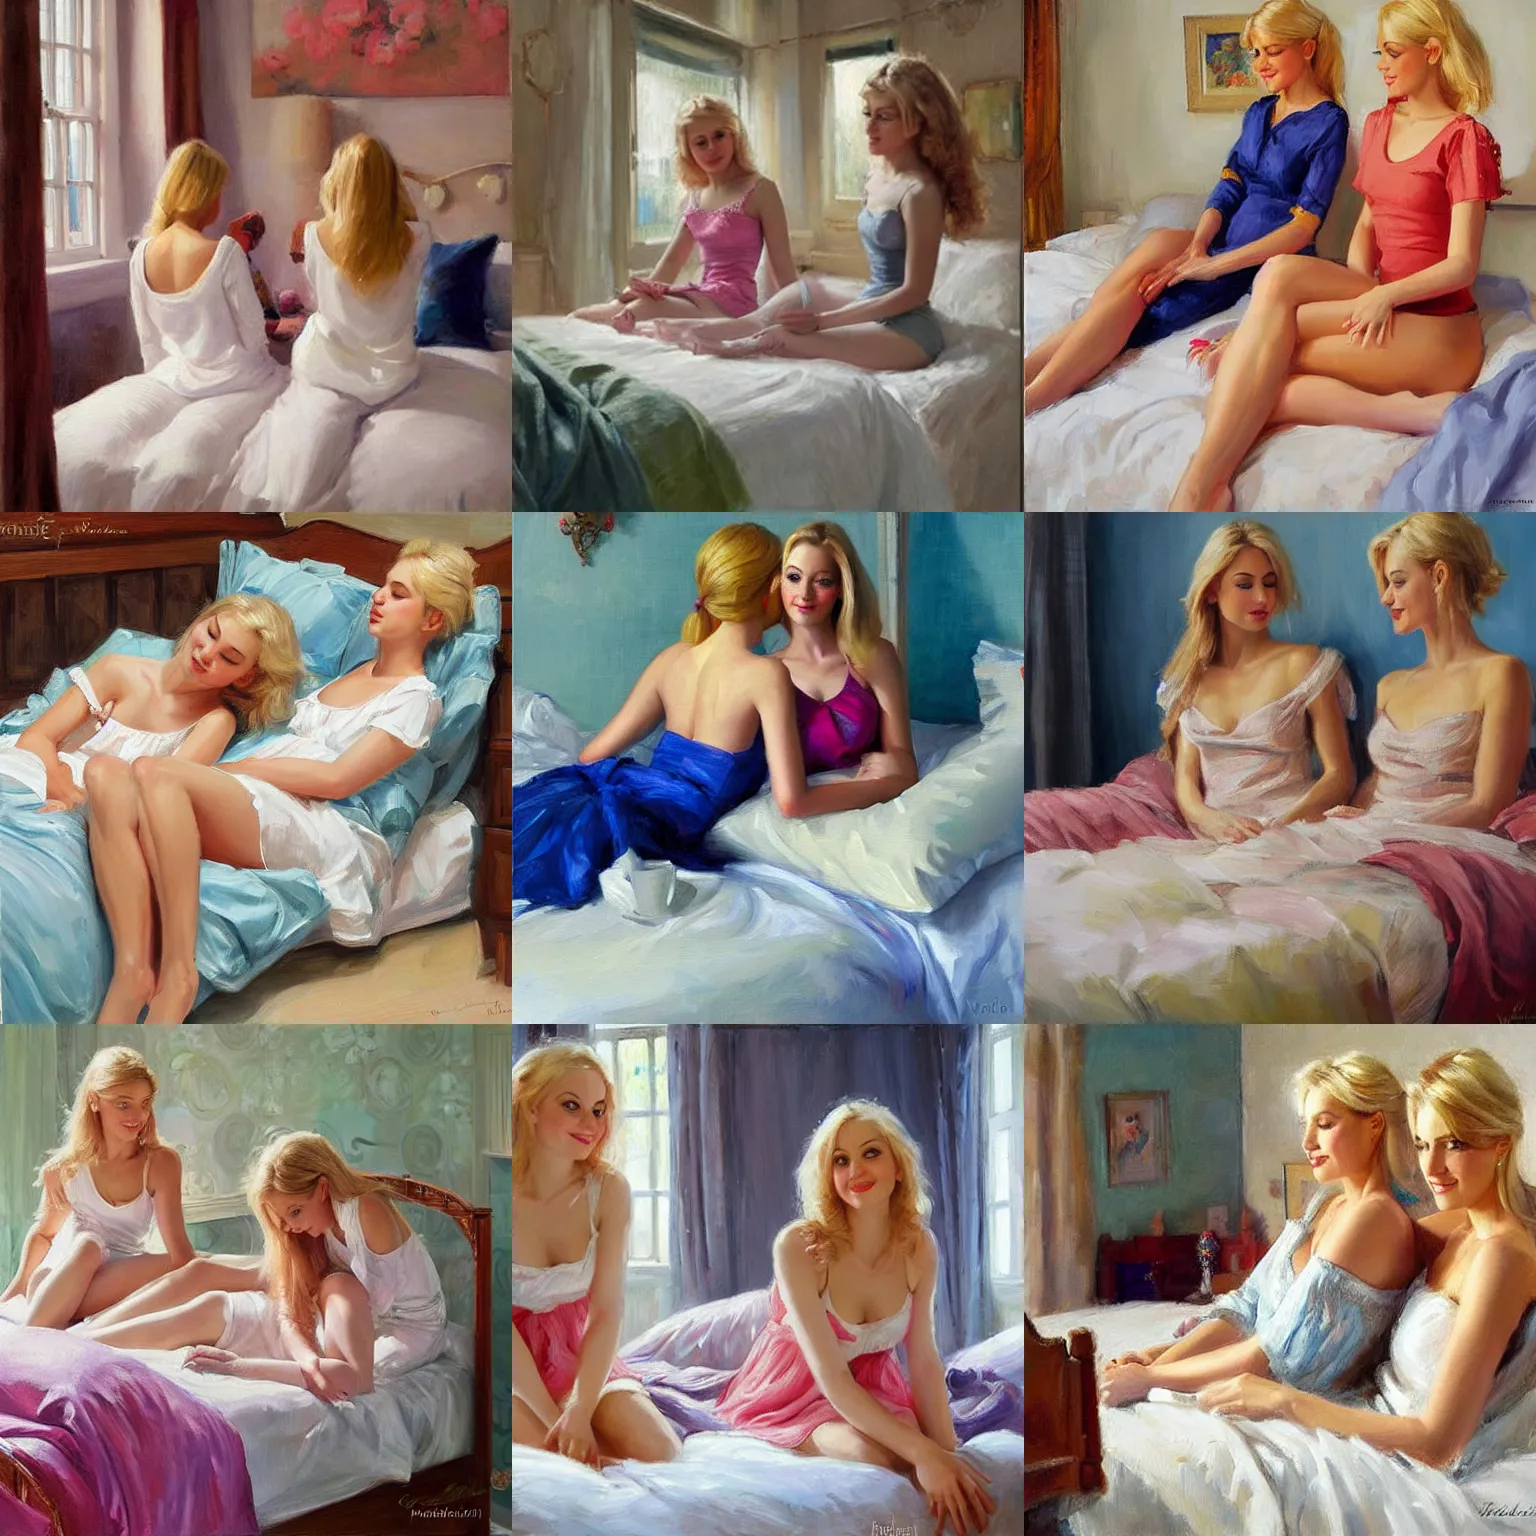 Prompt: two blonde women twins in the bedroom, painting by Vladimir Volegov